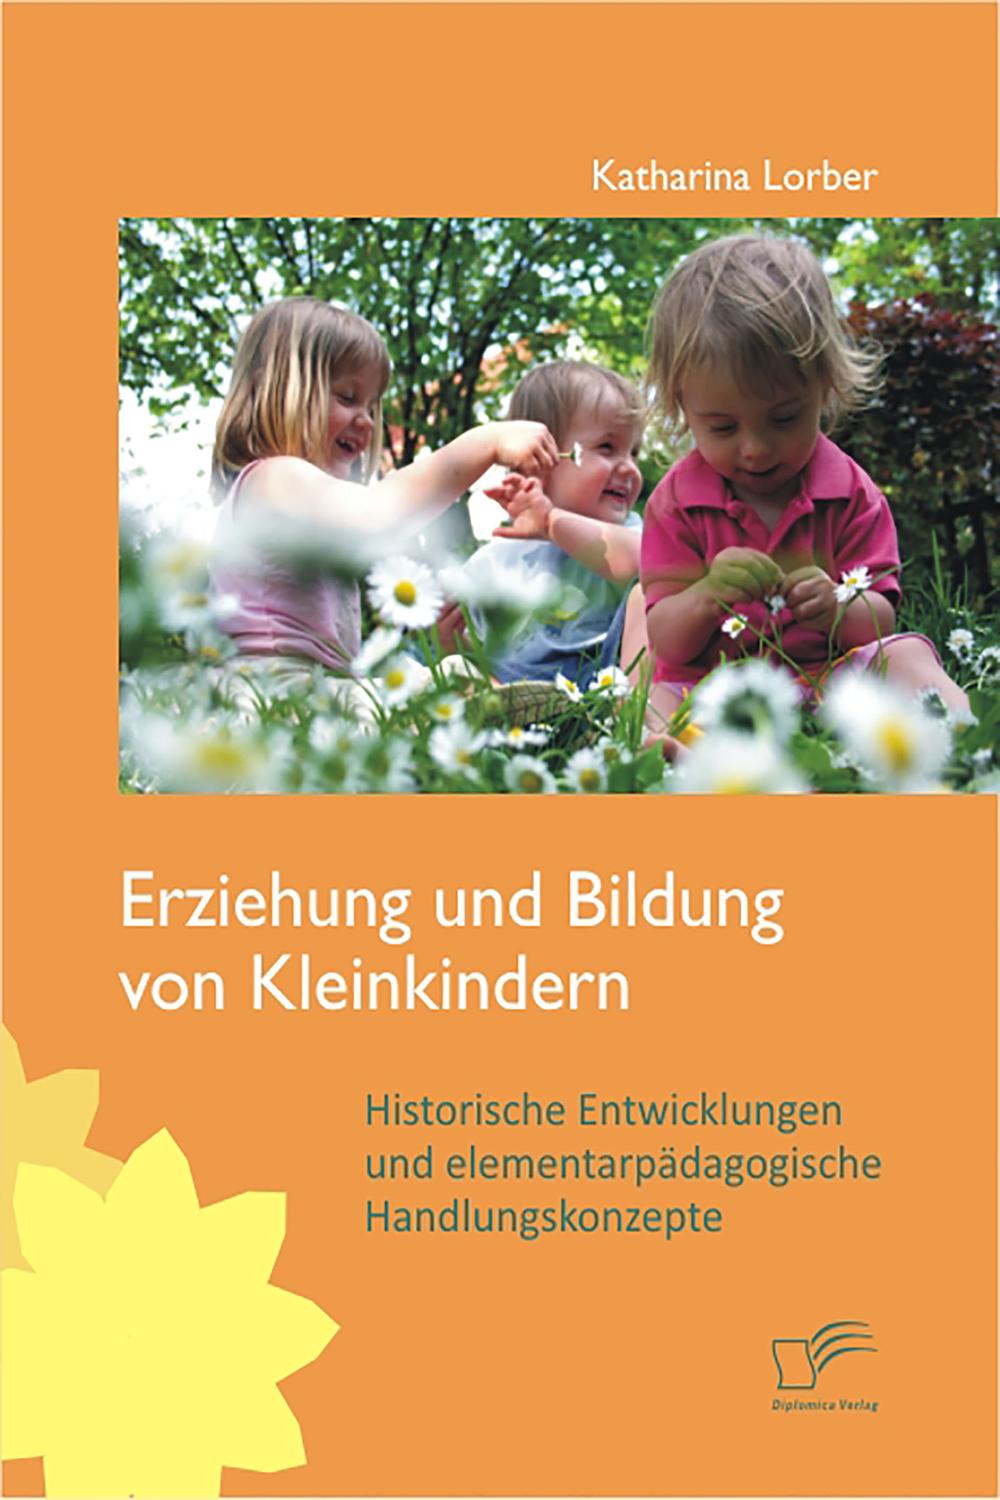 Erziehung und Bildung von Kleinkindern: Historische Entwicklungen und elementarpädagogische Handlungskonzepte - Katharina Lorber